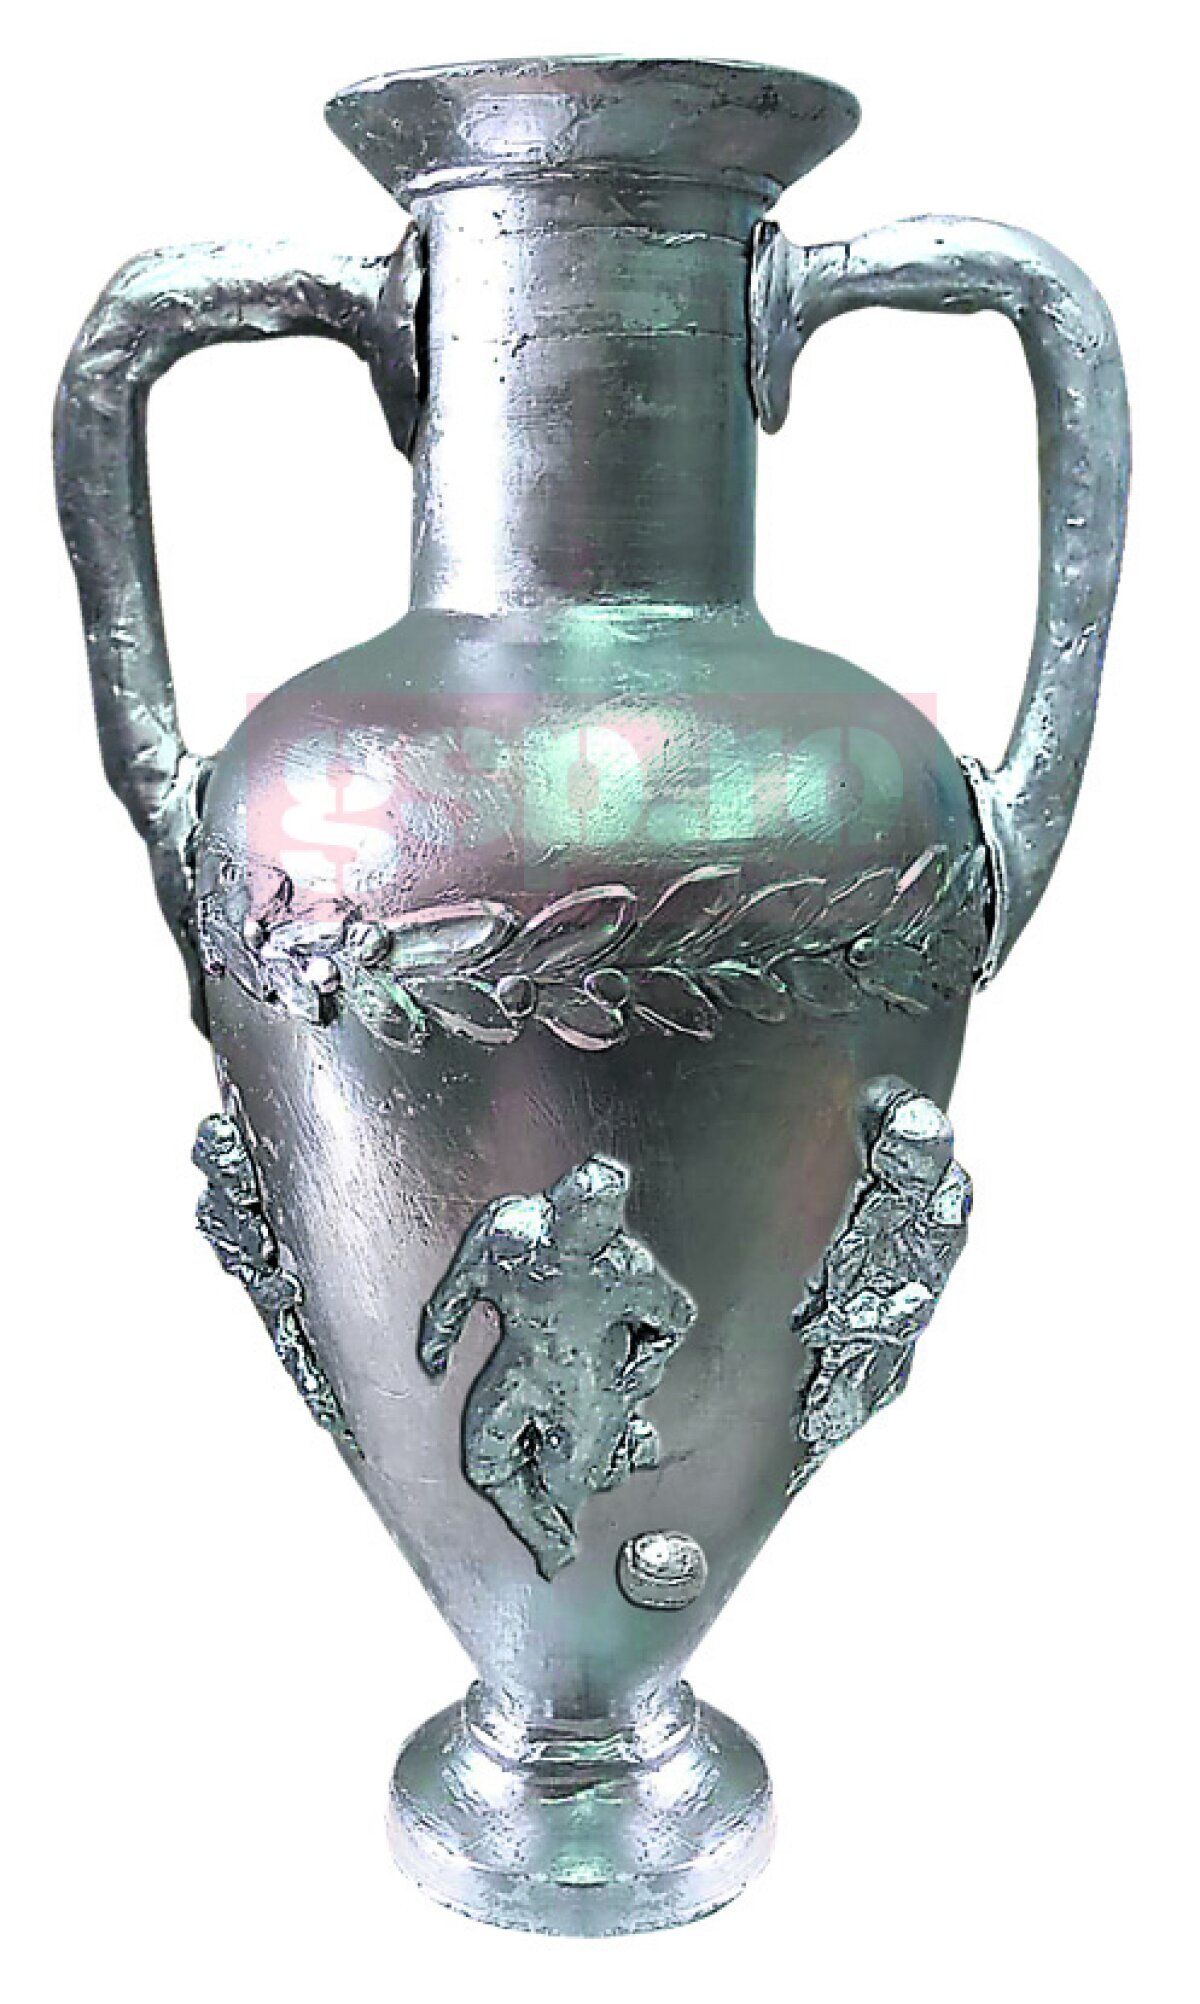 EXCLUSIV Așa arată trofeul campioanei Ligii 1! O înlănțuire de simboluri: amforă grecească, cu epopee romană și simboluri dacice! Cum ți se pare? 